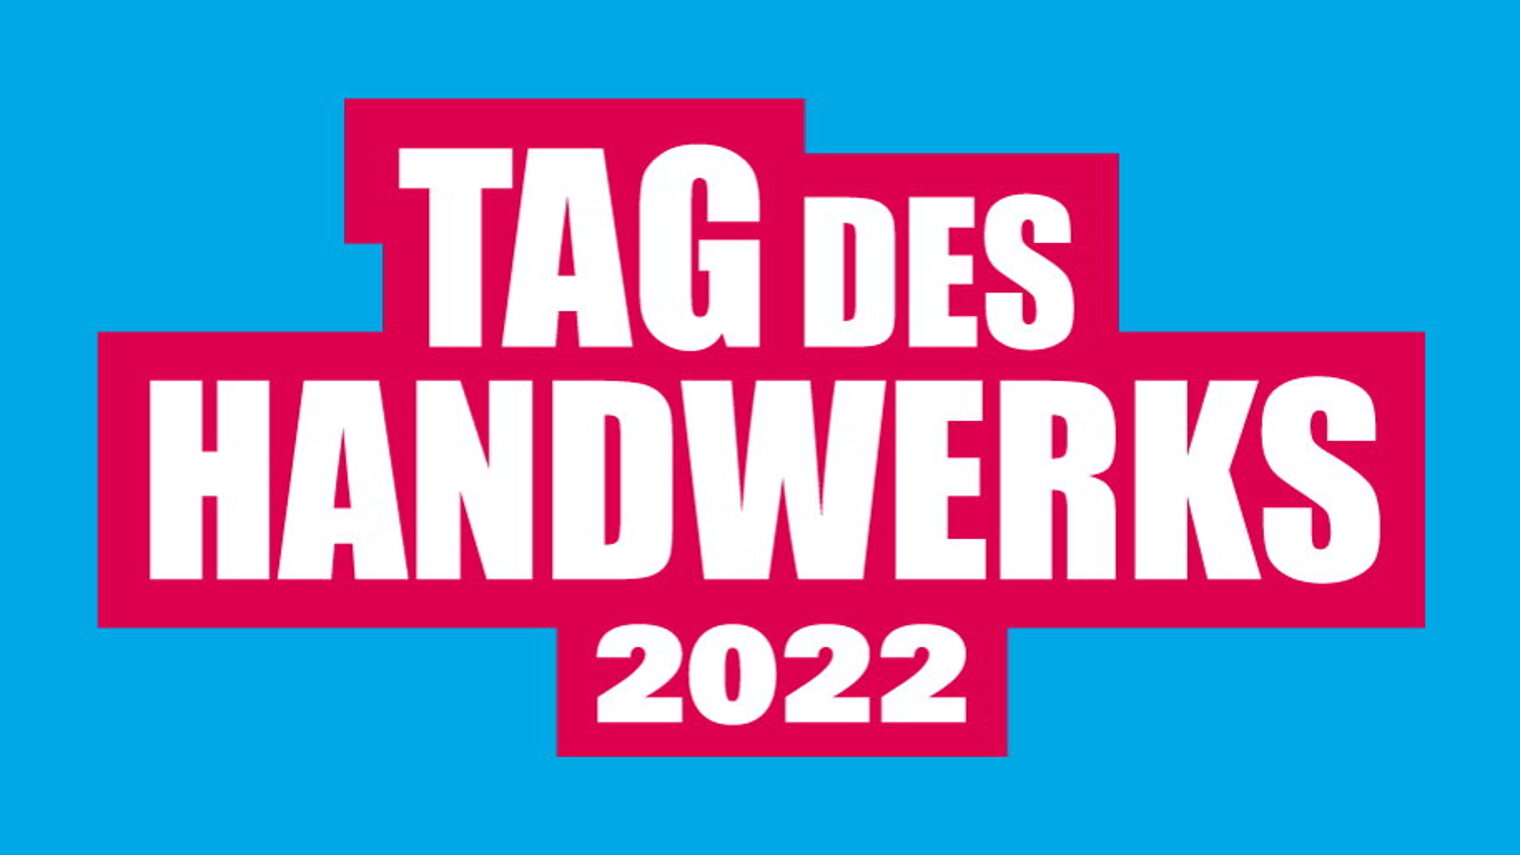 Auf kräftigem blauen Hintergrund steht der Schriftzug "Tag des Handwerks 2022" in weißer Schrift, rot hinterlegt.